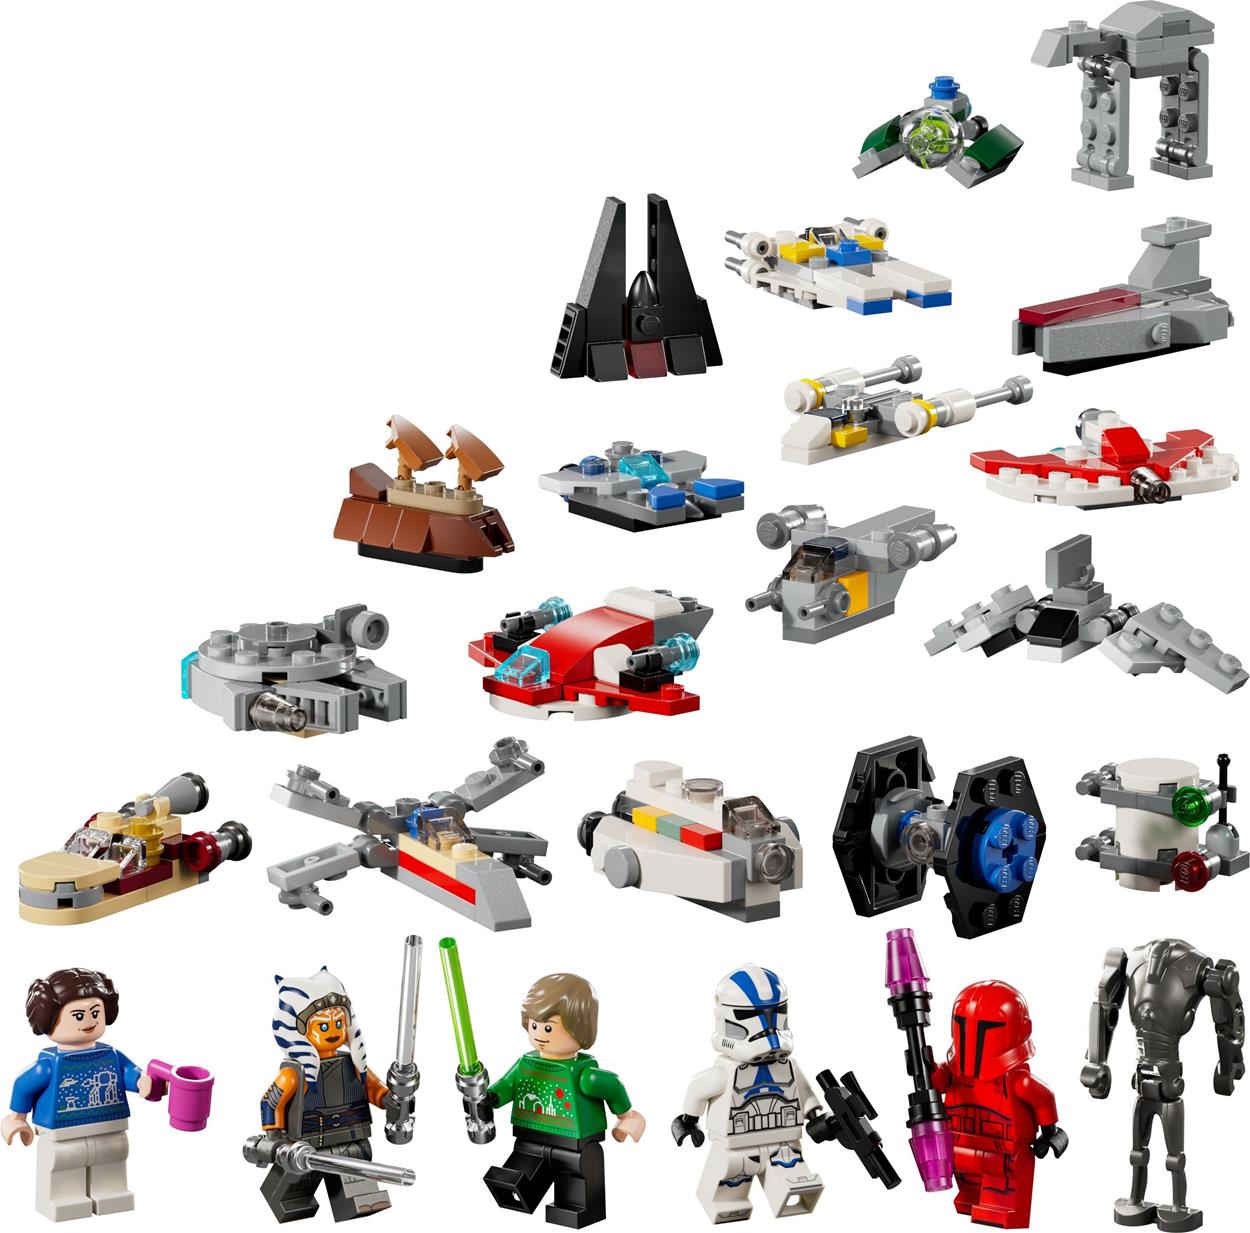 építőkészlet LEGO® Star Wars™ 75395 Adventi naptár 2024